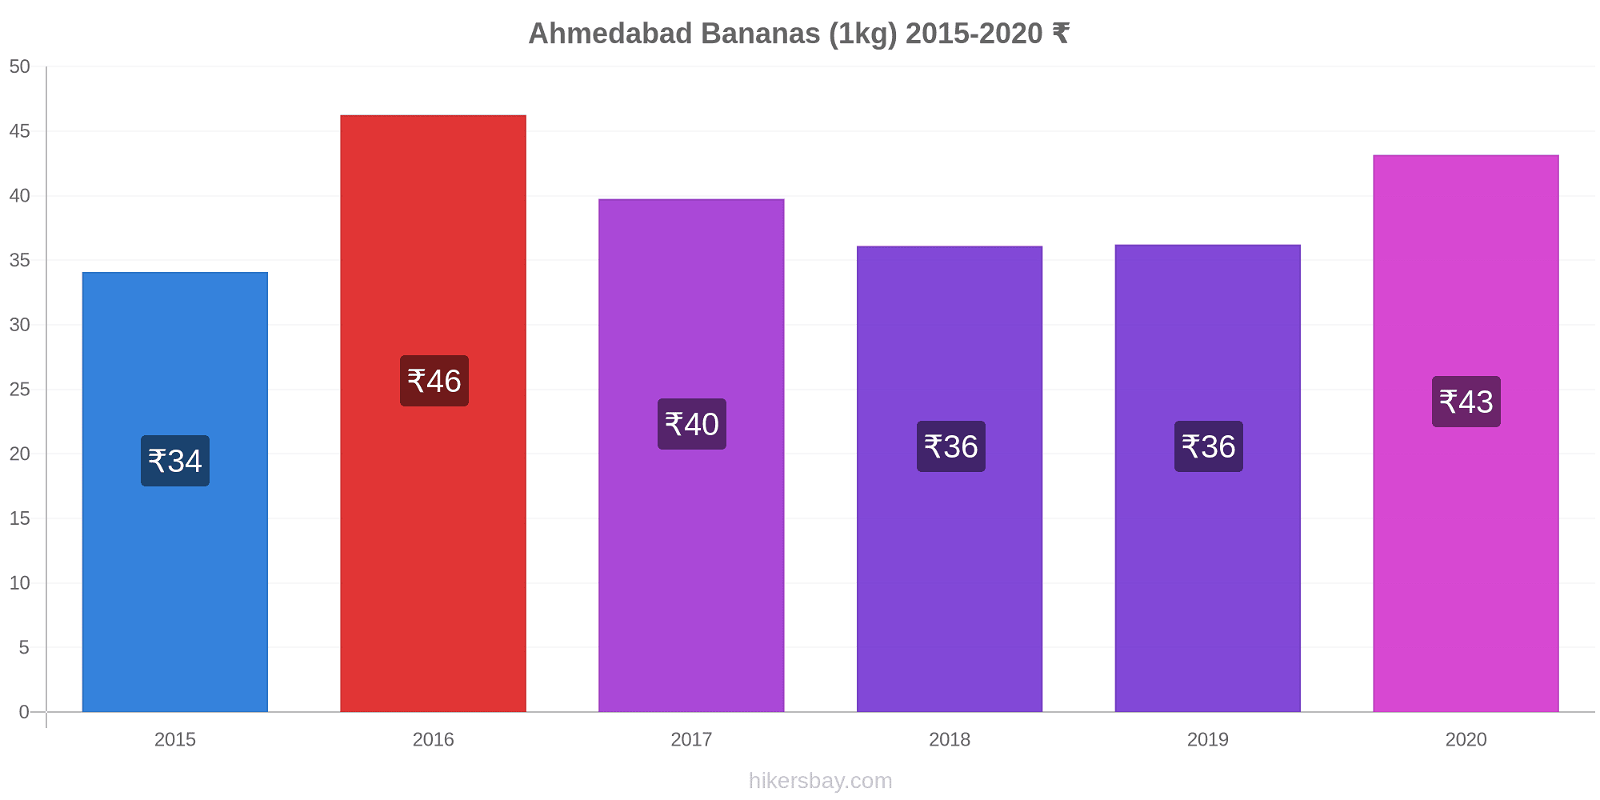 Ahmedabad variação de preço Banana (1kg) hikersbay.com